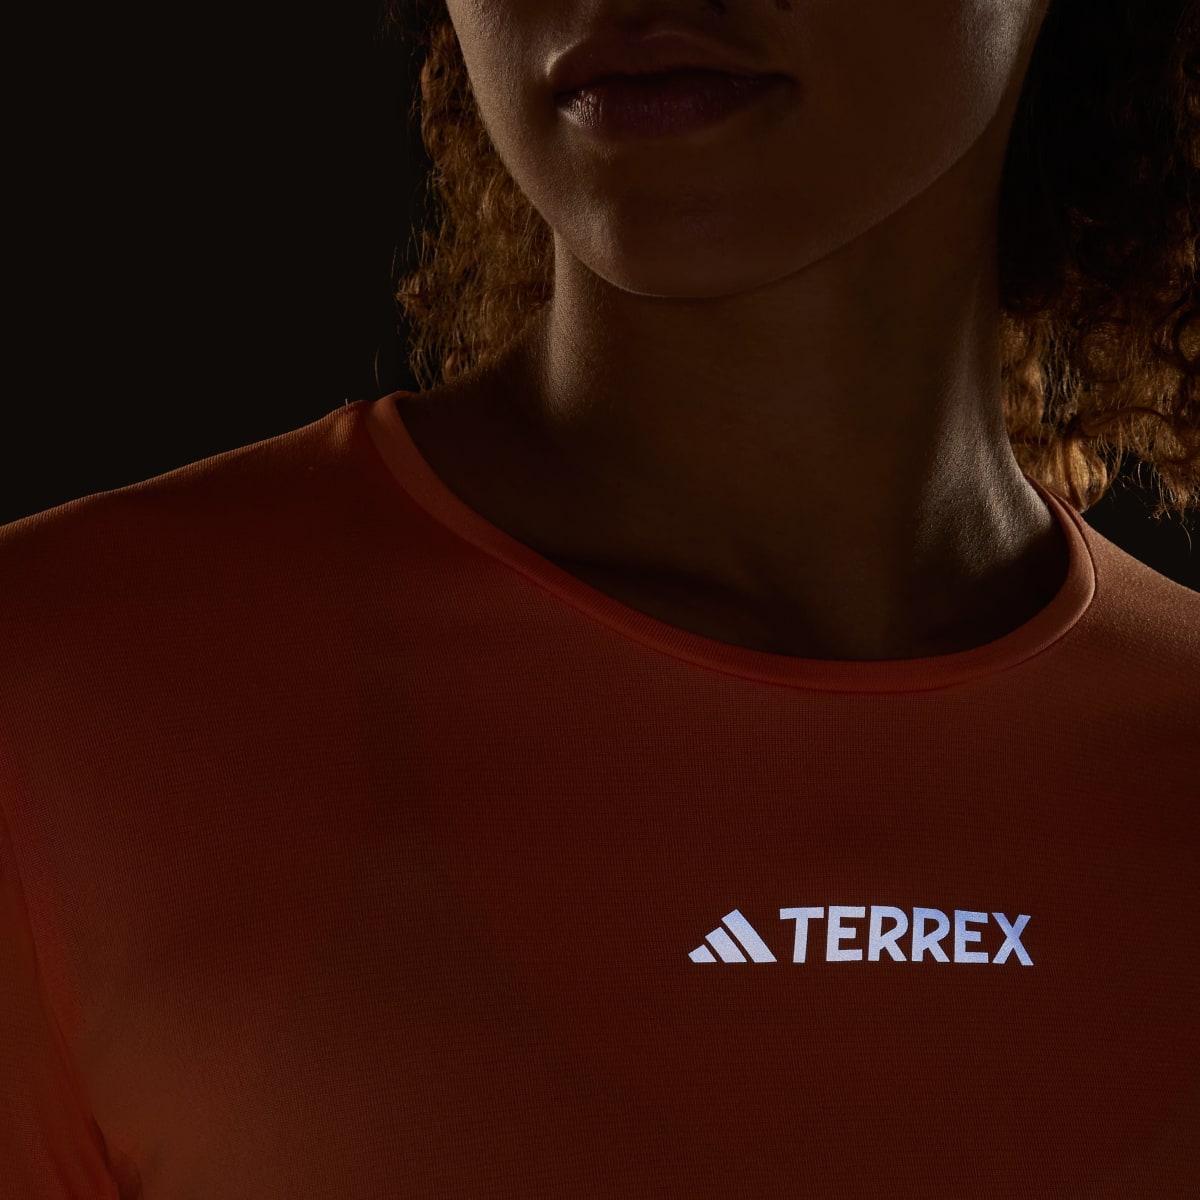 Adidas Terrex Multi T-Shirt. 8